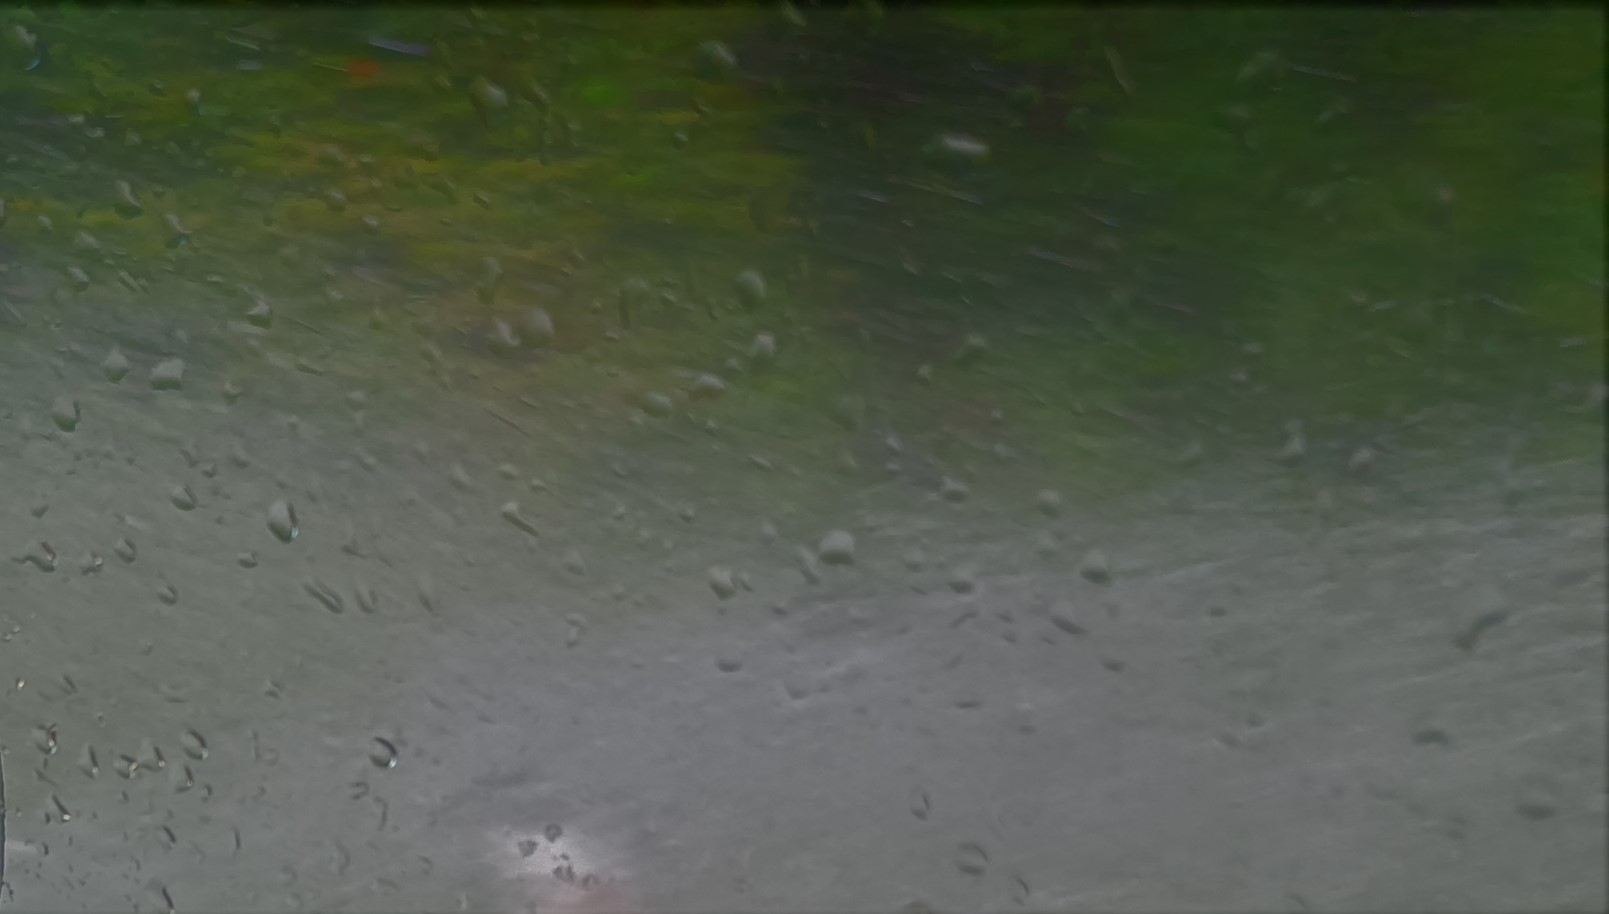 Slika, ki vsebuje besede voda, dež

Opis je samodejno ustvarjen